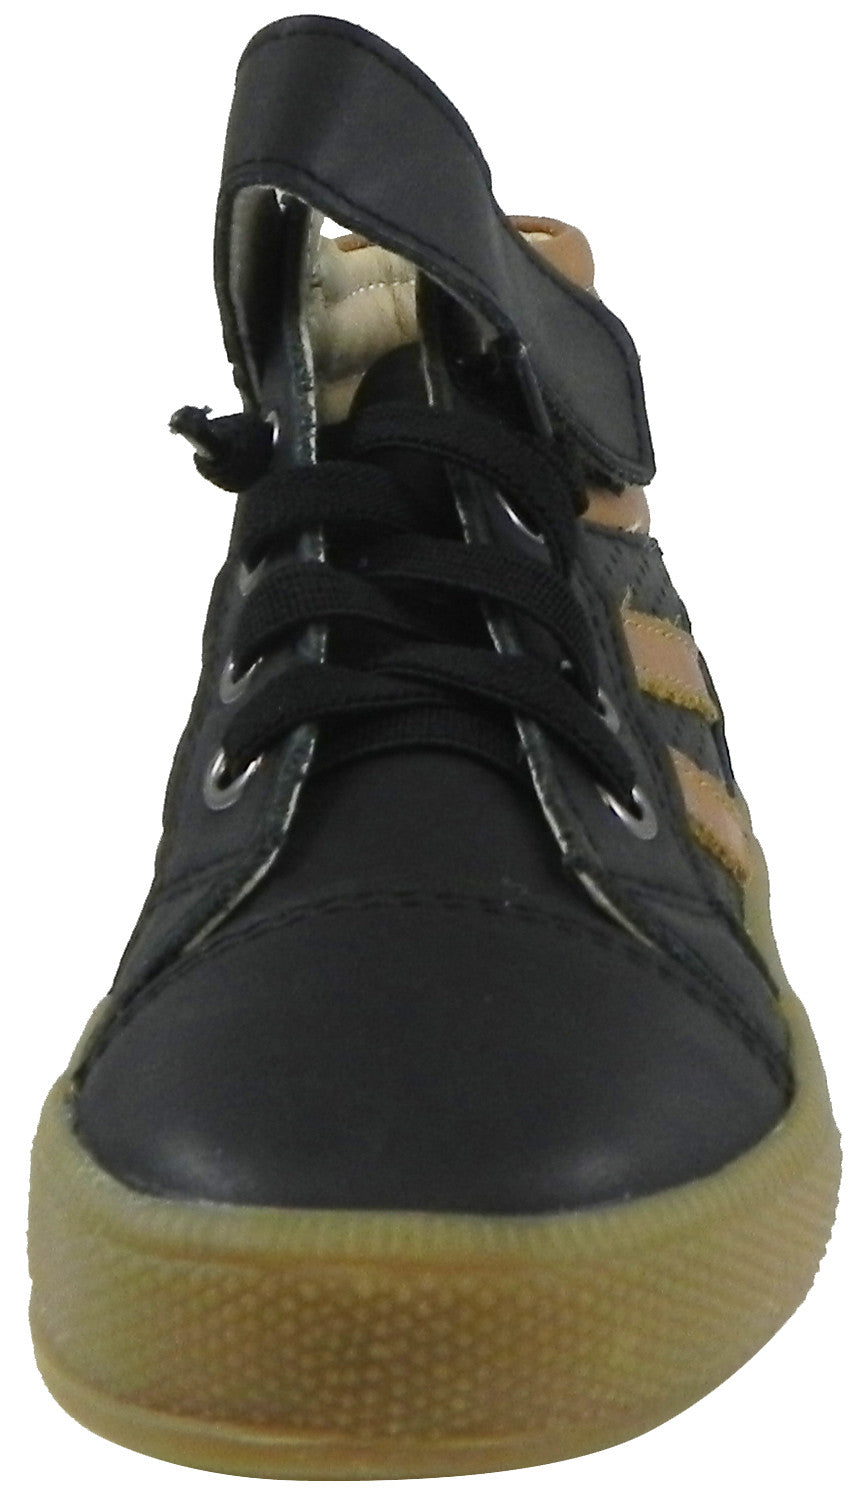 Old Soles Boy's 1049 Outback Shoe Sneaker Black/Tan